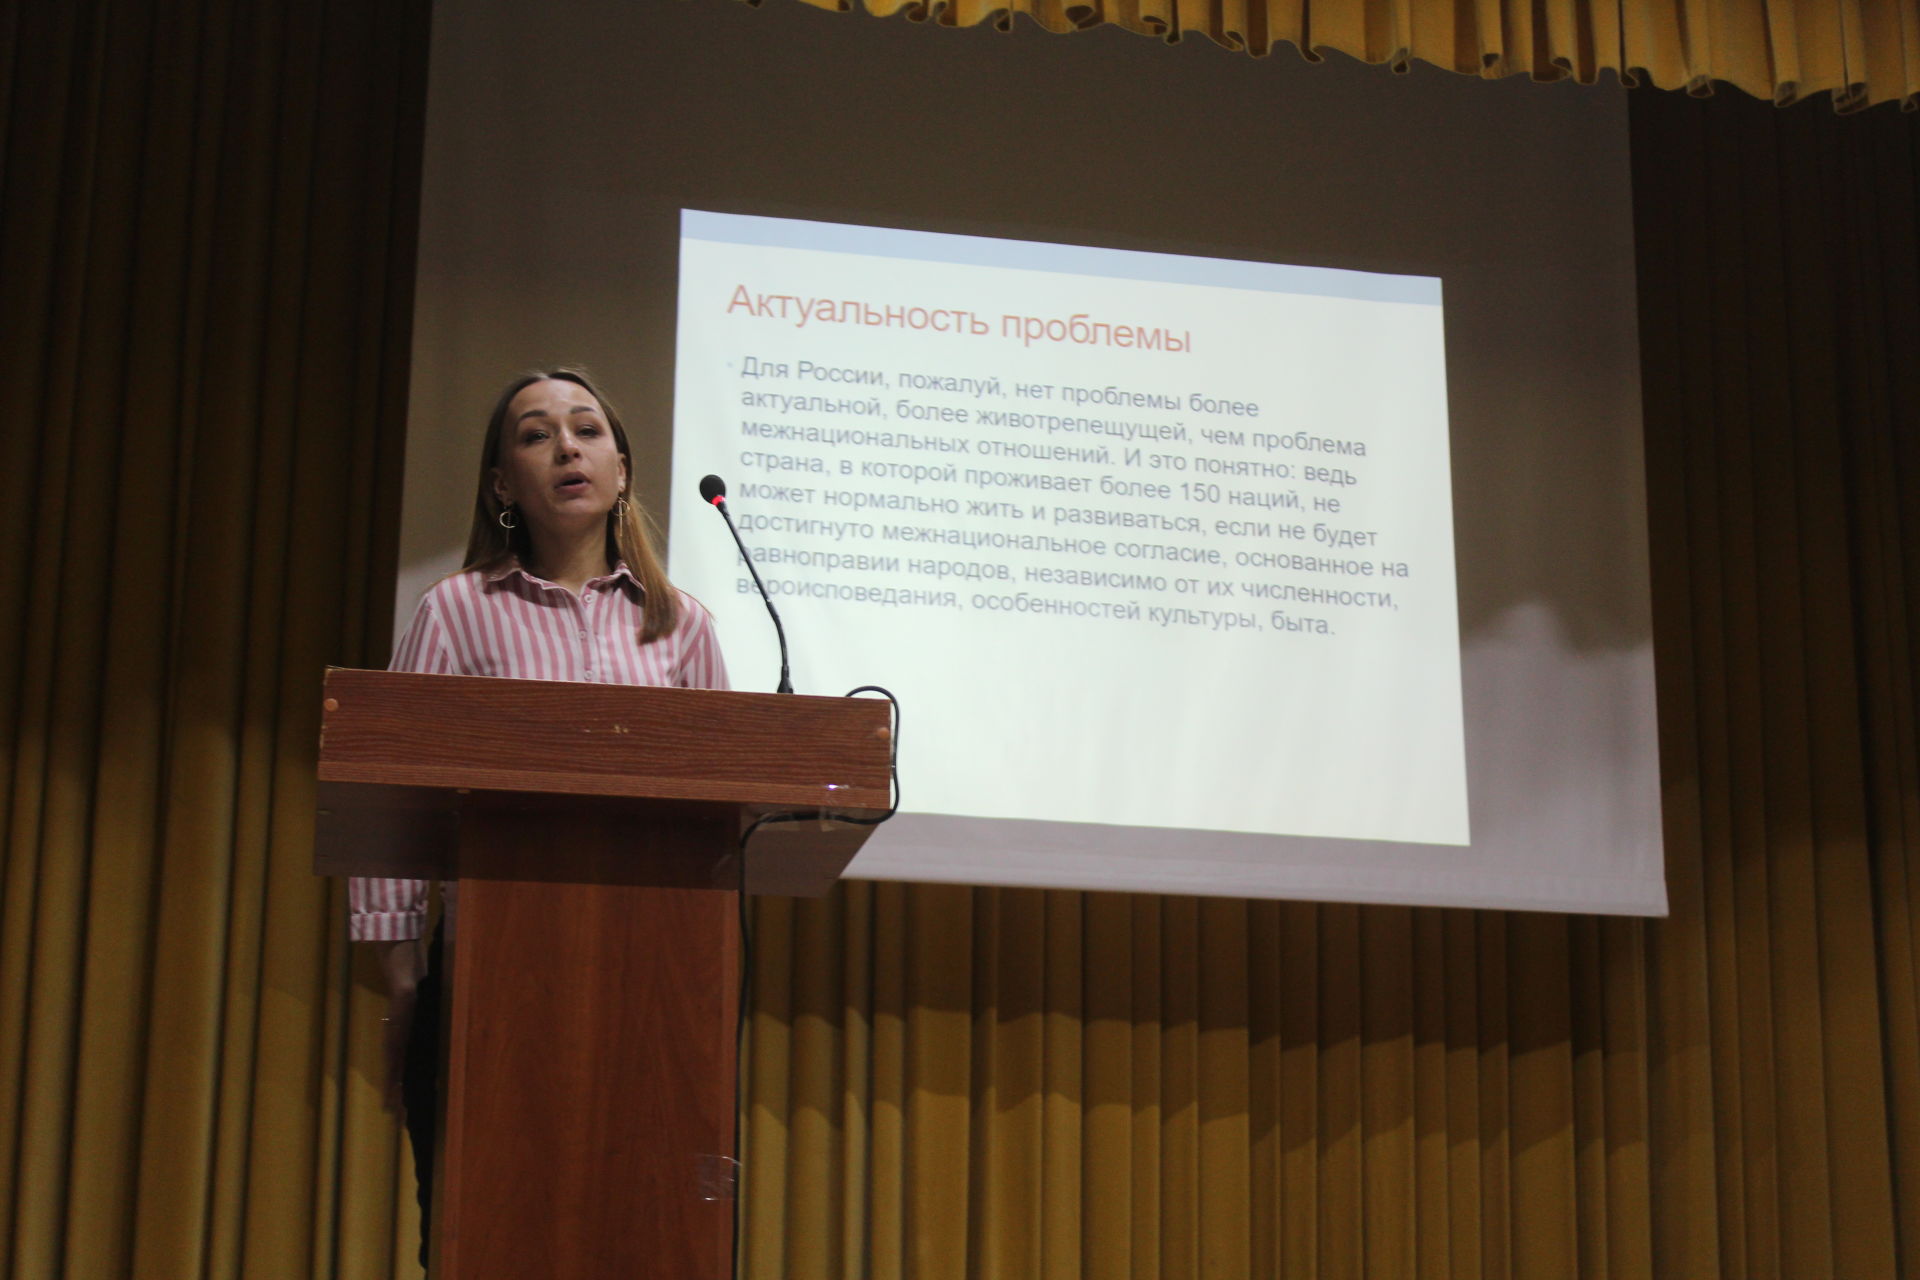 Форум молодежных инициатив в Дрожжановском районе -2021